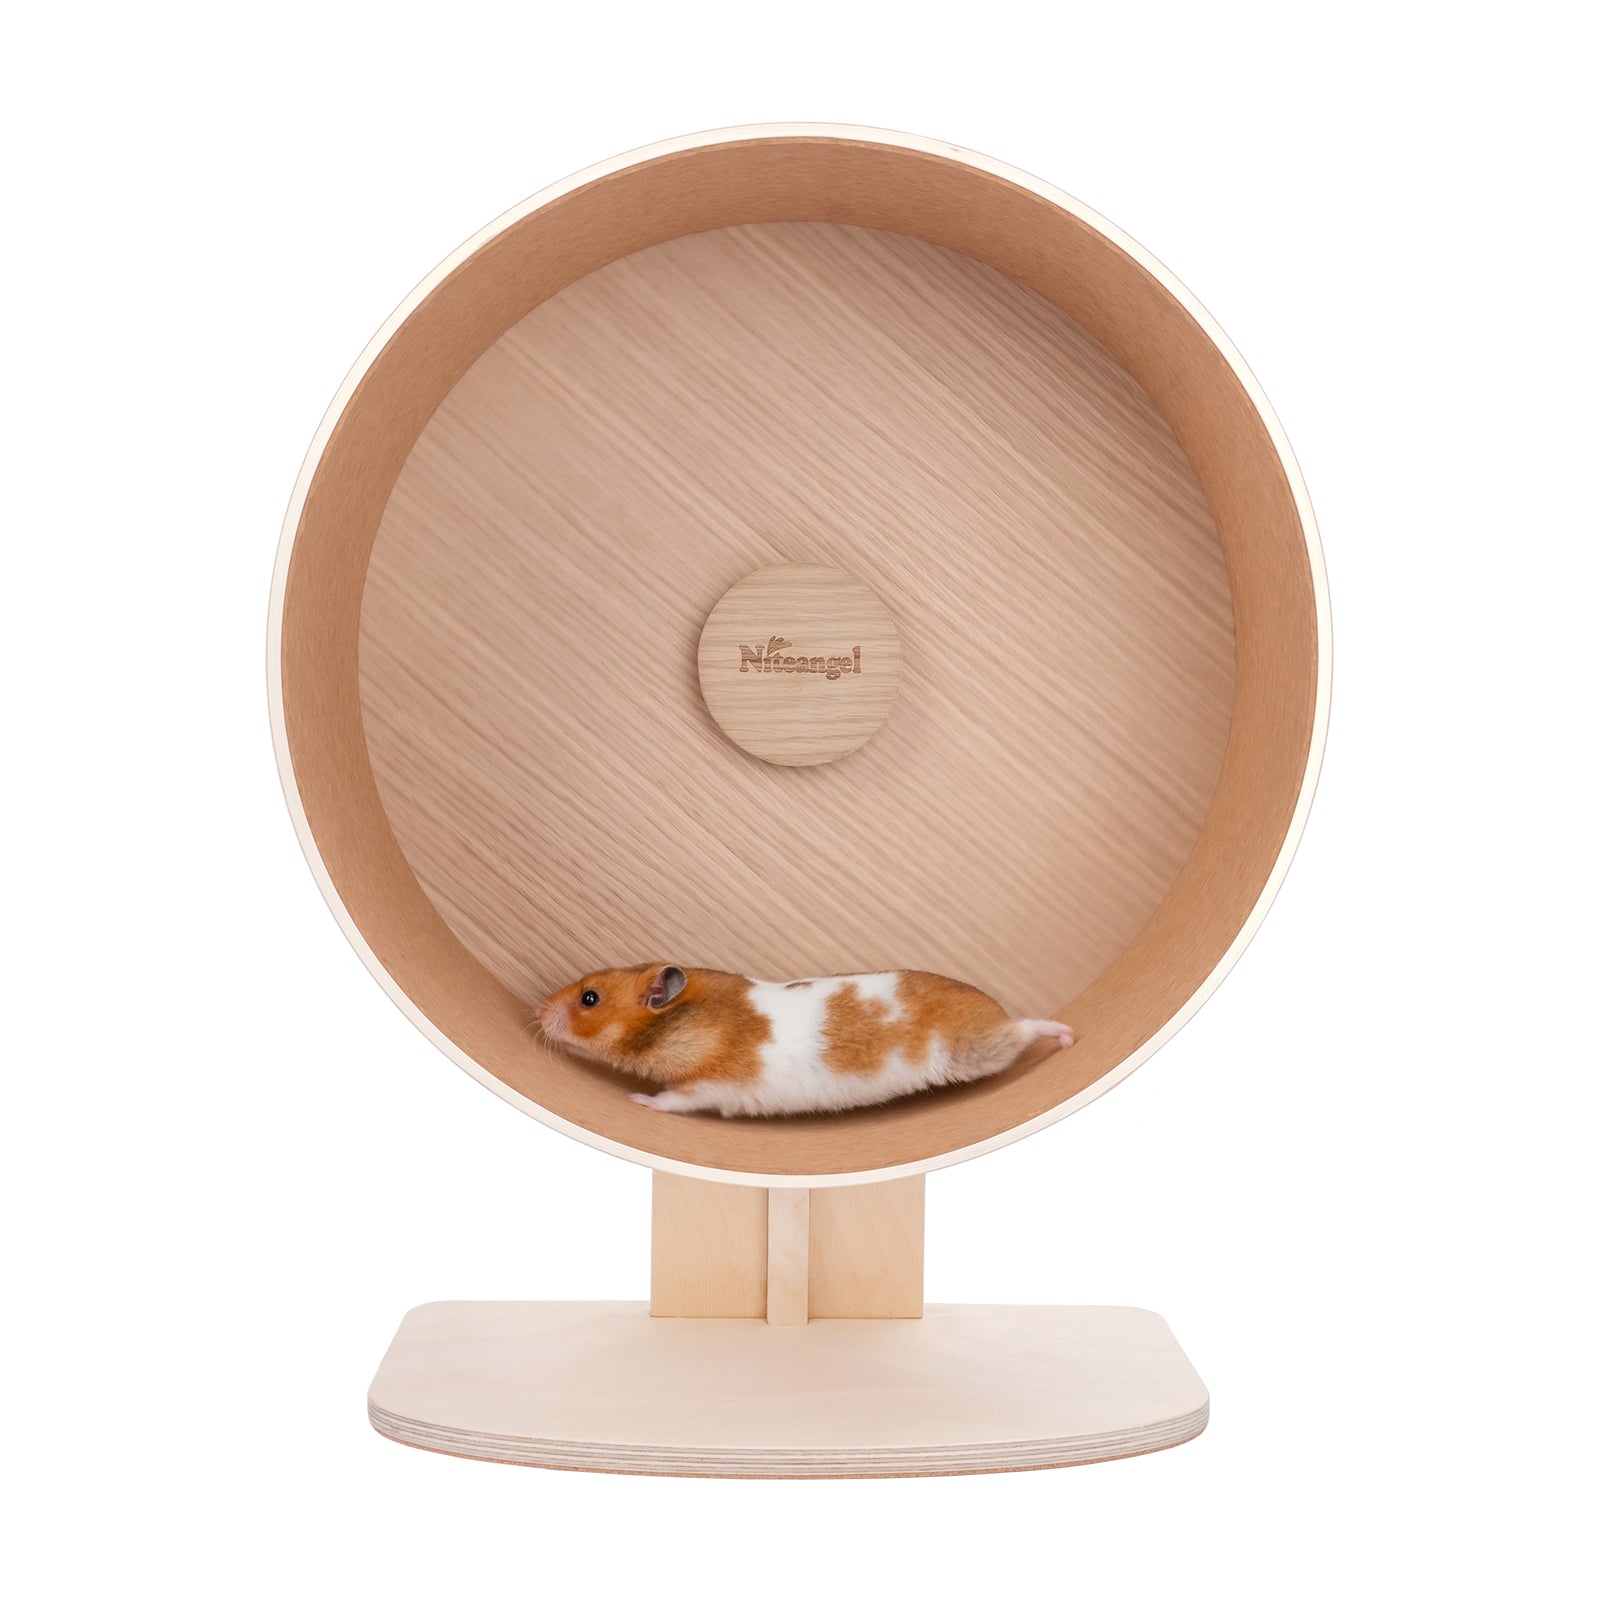 Niteangel Wooden Hamster Exercise Wheel - Niteangel Pet CA